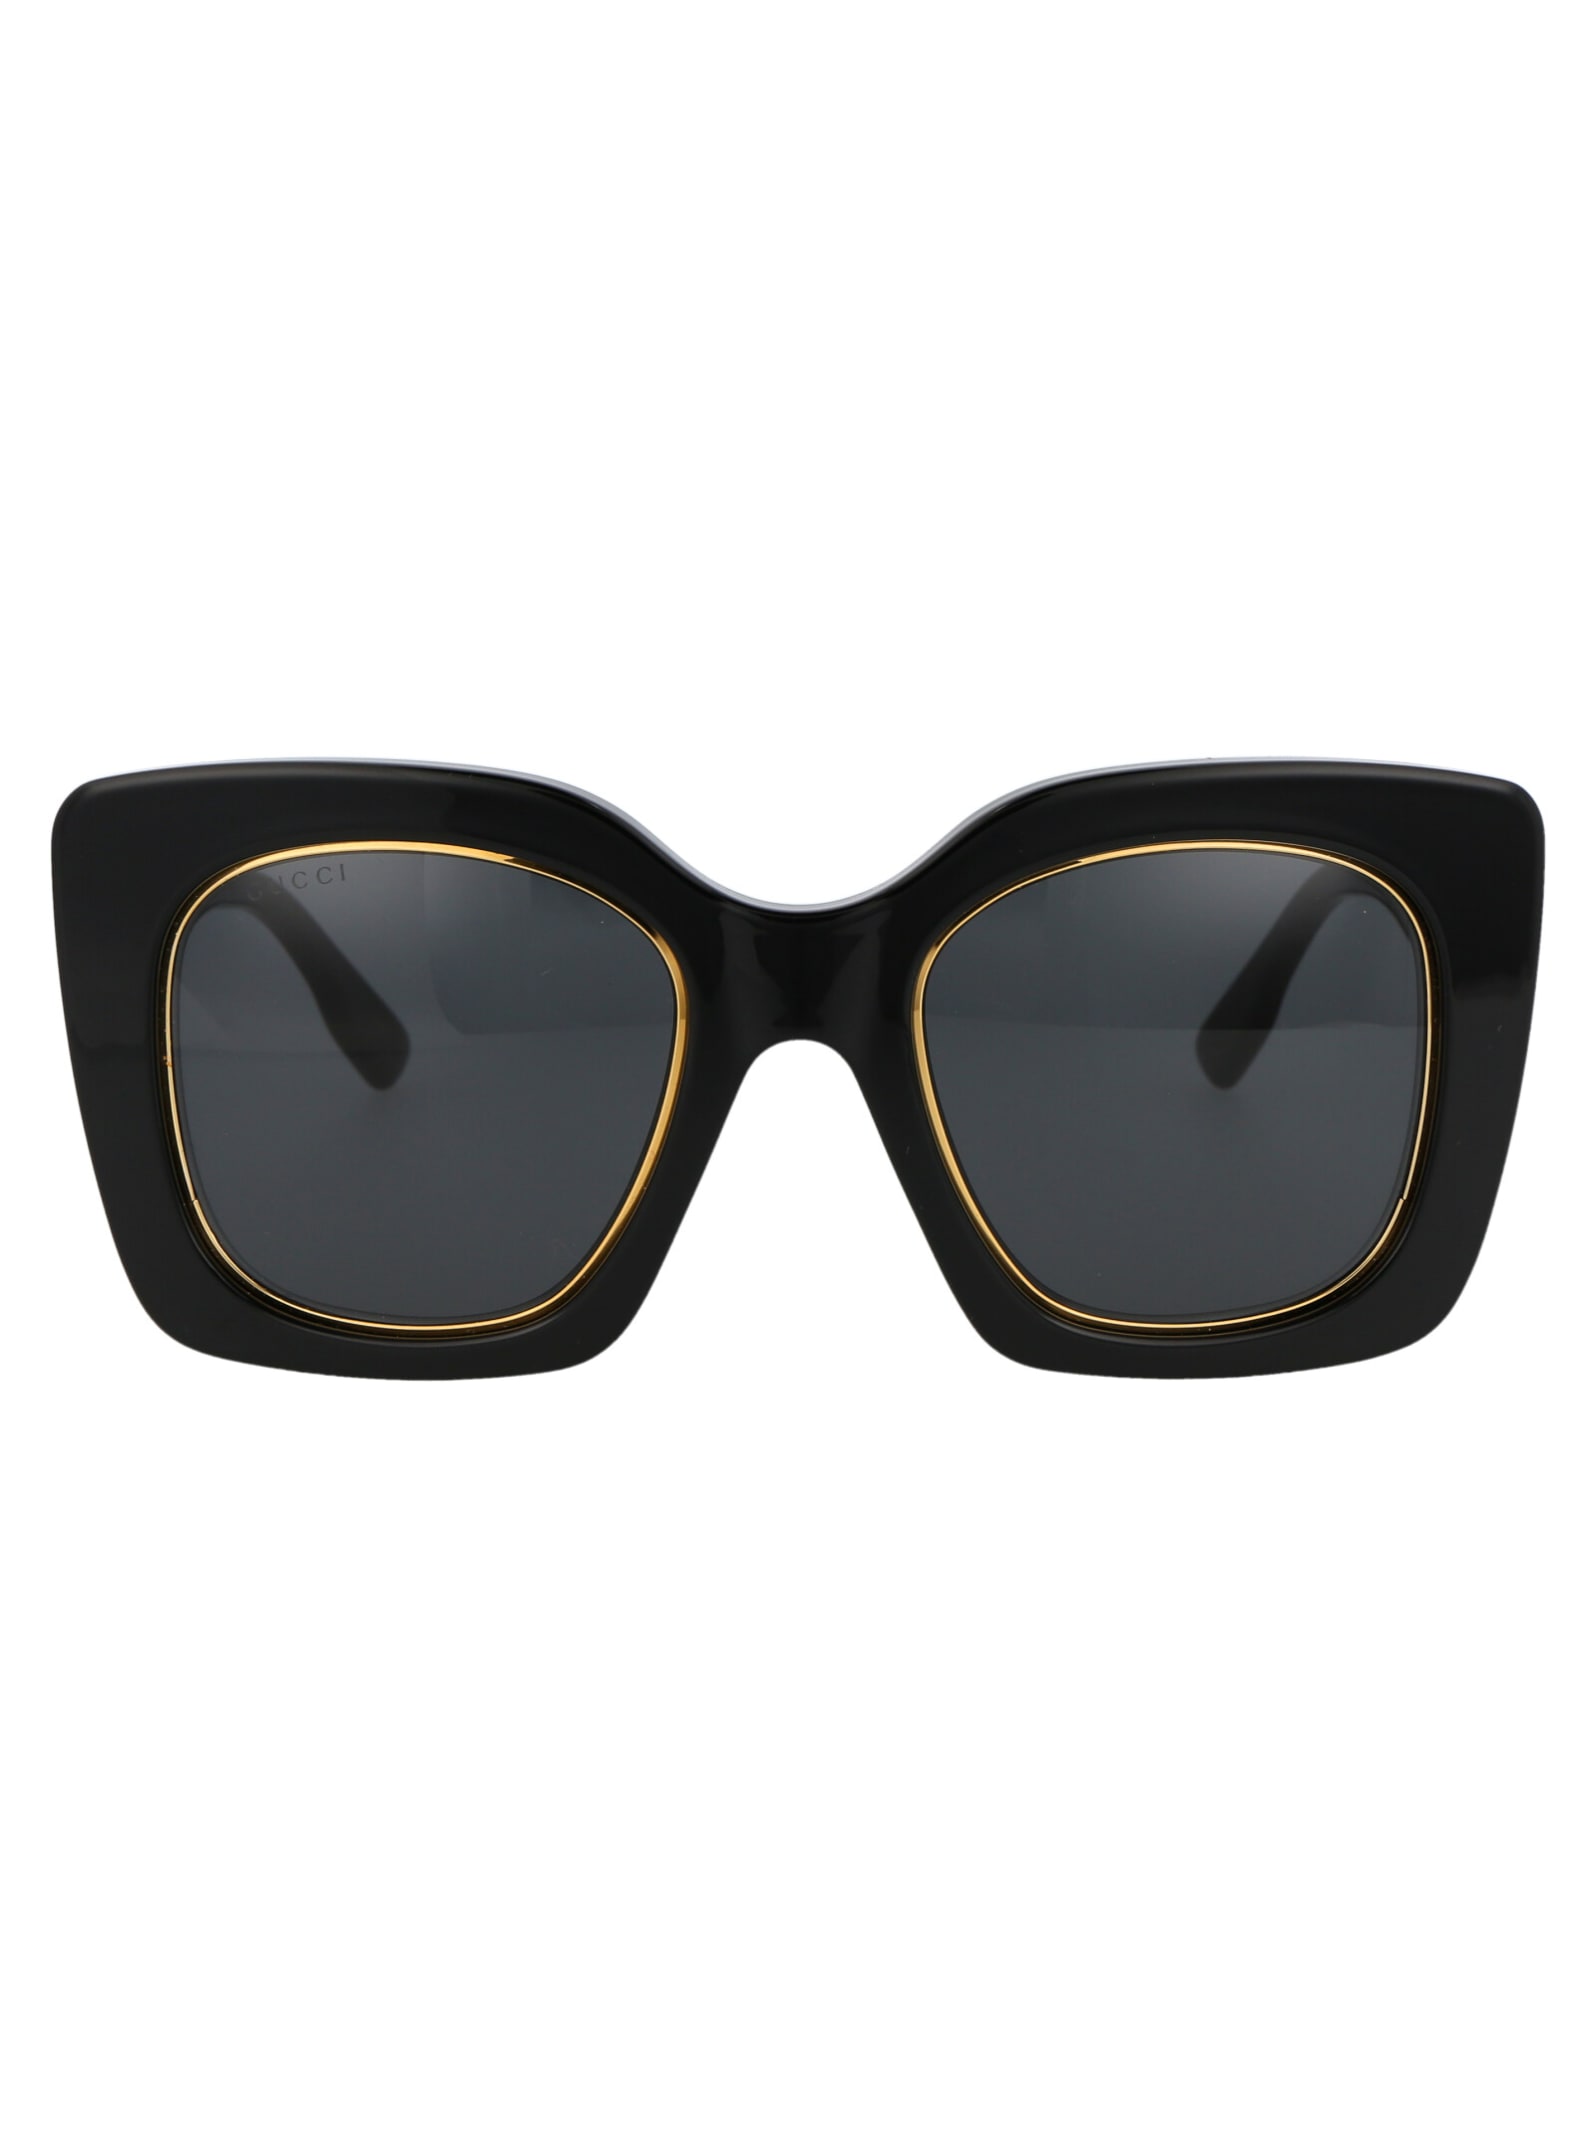 Gucci Gg1151s Sunglasses In 001 Black Black Grey